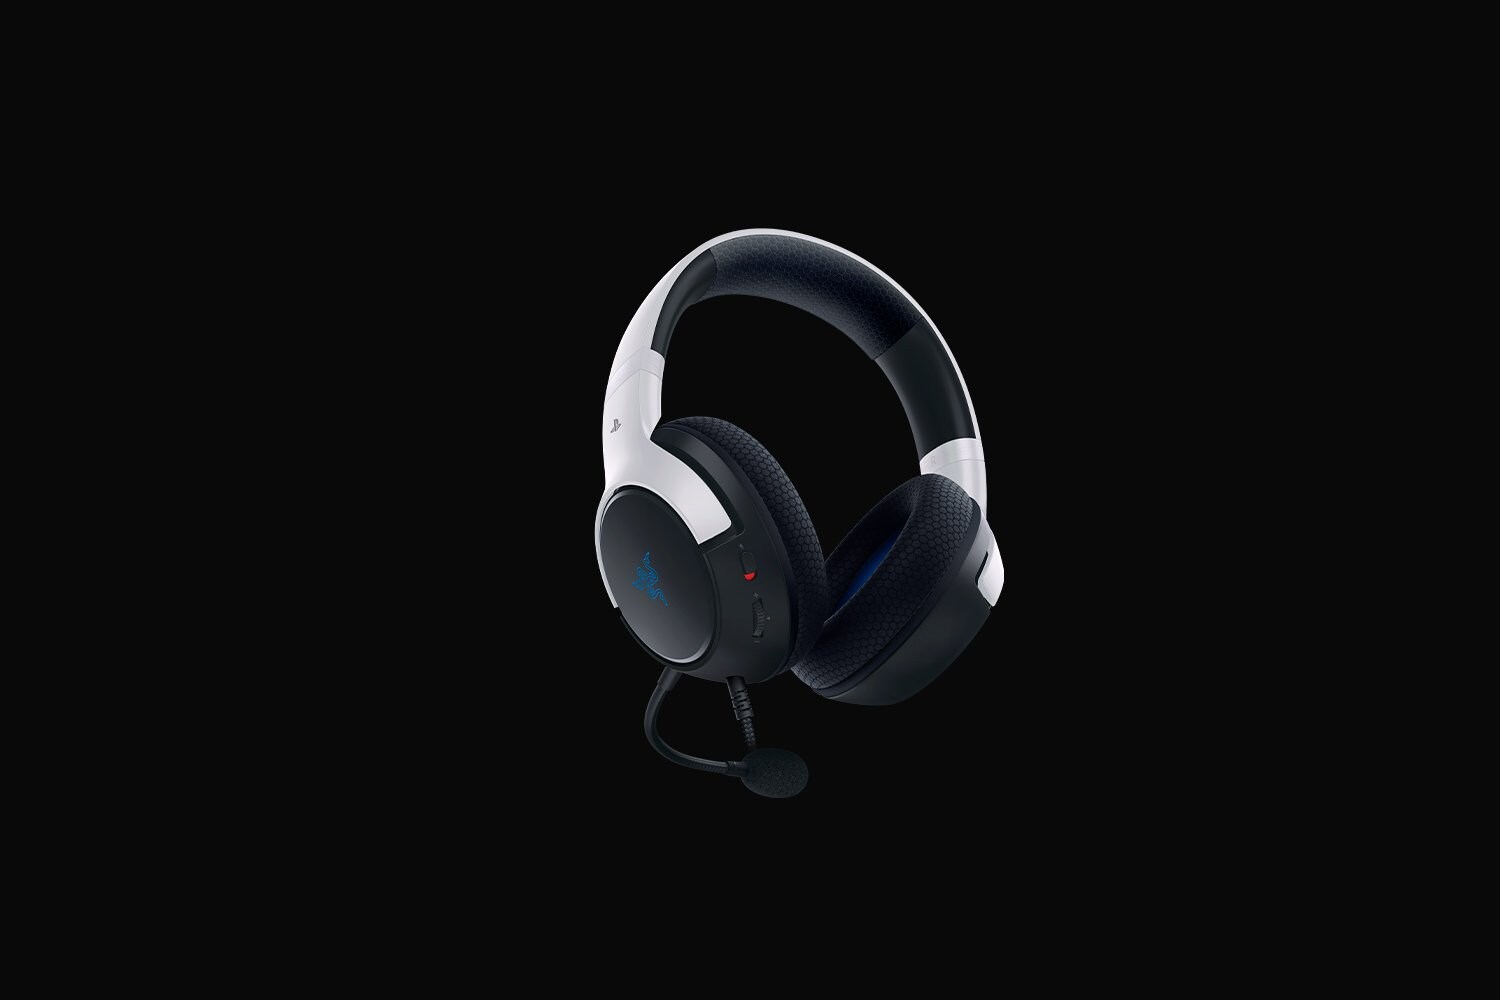 RAZER Kaira X Kabelgebundenes Gaming Headset für Playstation 5 ++ Cyberport